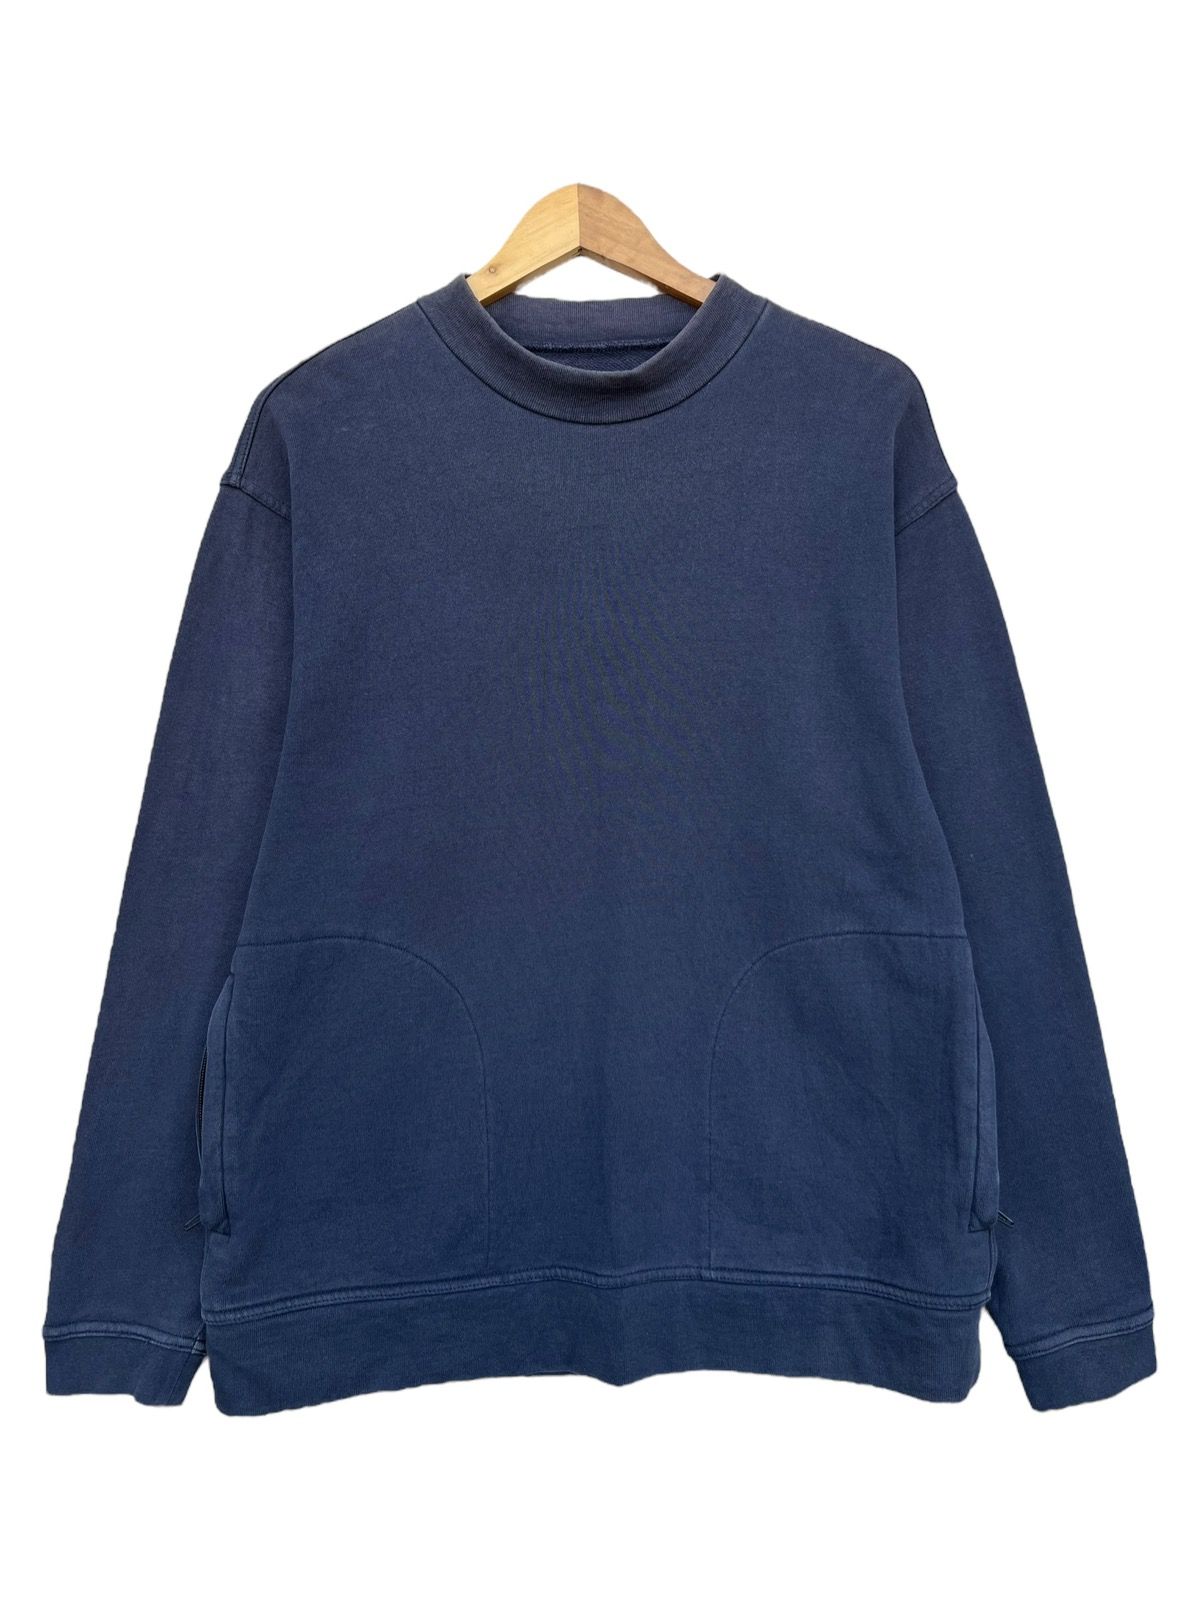 Vintage Beams Plus Japan Style Sweater Mock Neck Sweatshirt - 1